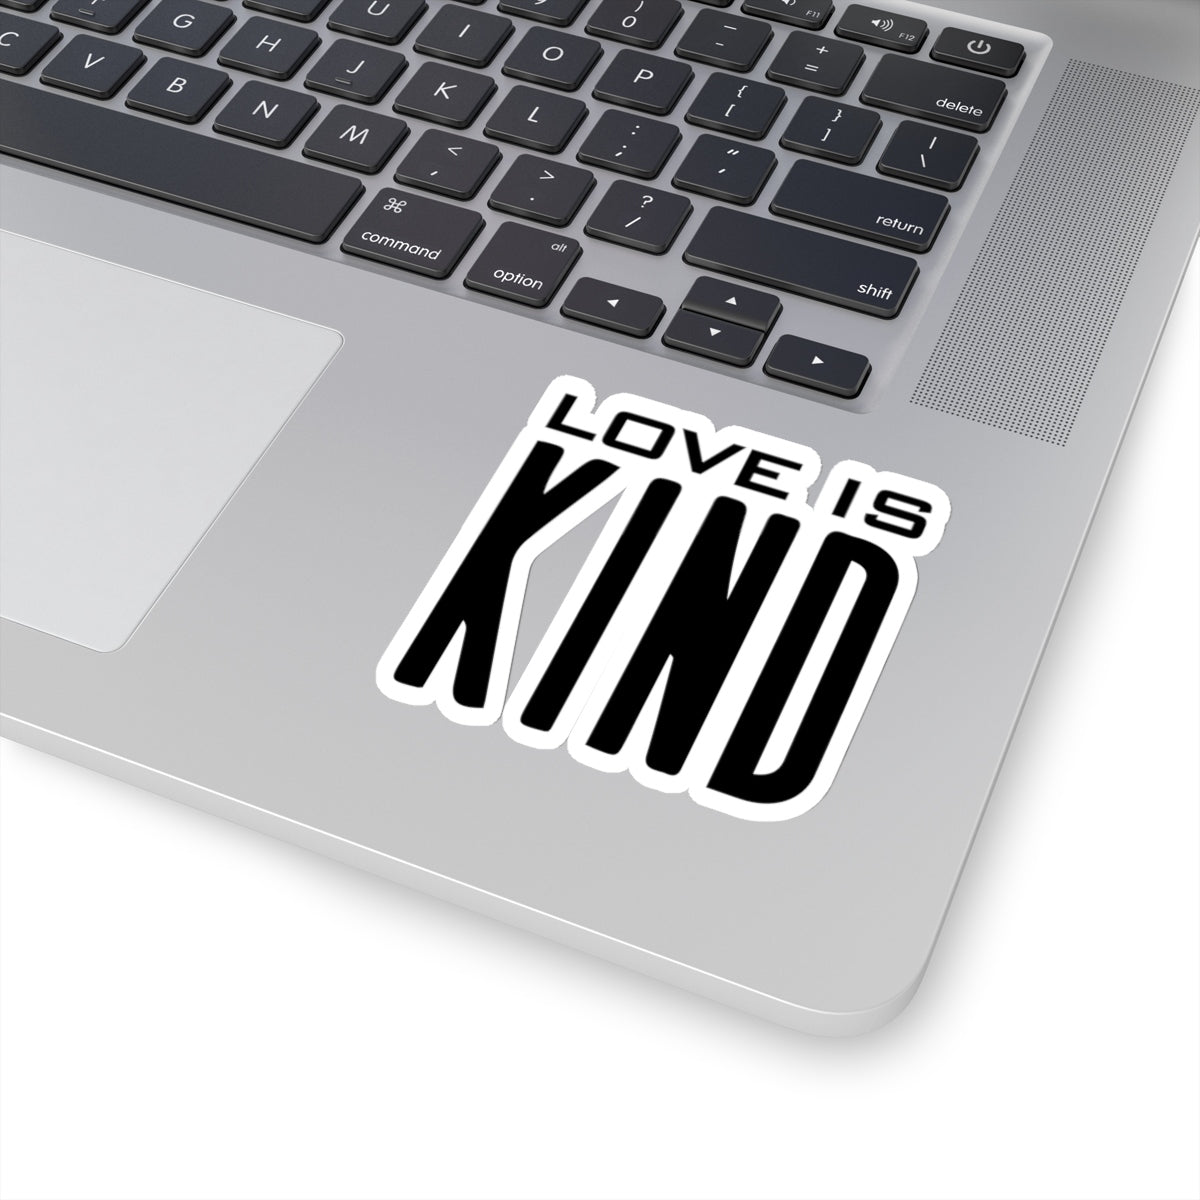 Love is Kind Kiss-Cut Stickers